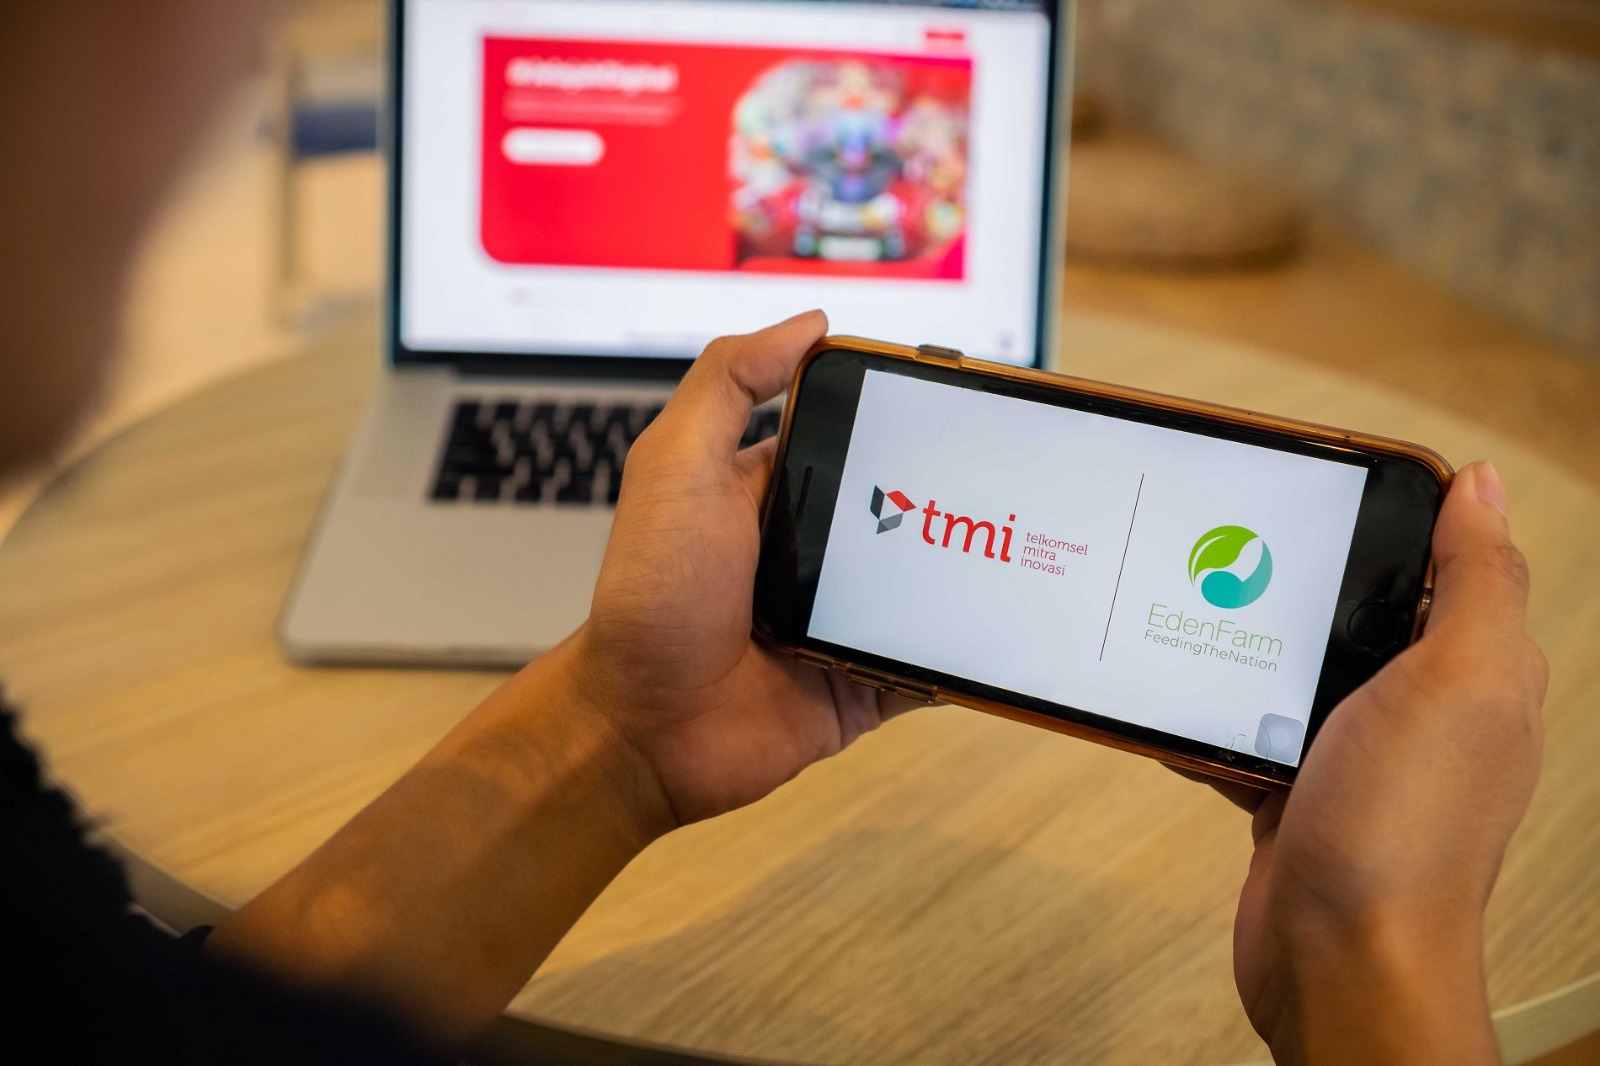 Telkomsel Mitra Inovasi (TMI) Pimpin Pendanaan Pre-Series B di Platform Agritech Terbesar Indonesia EdenFarm